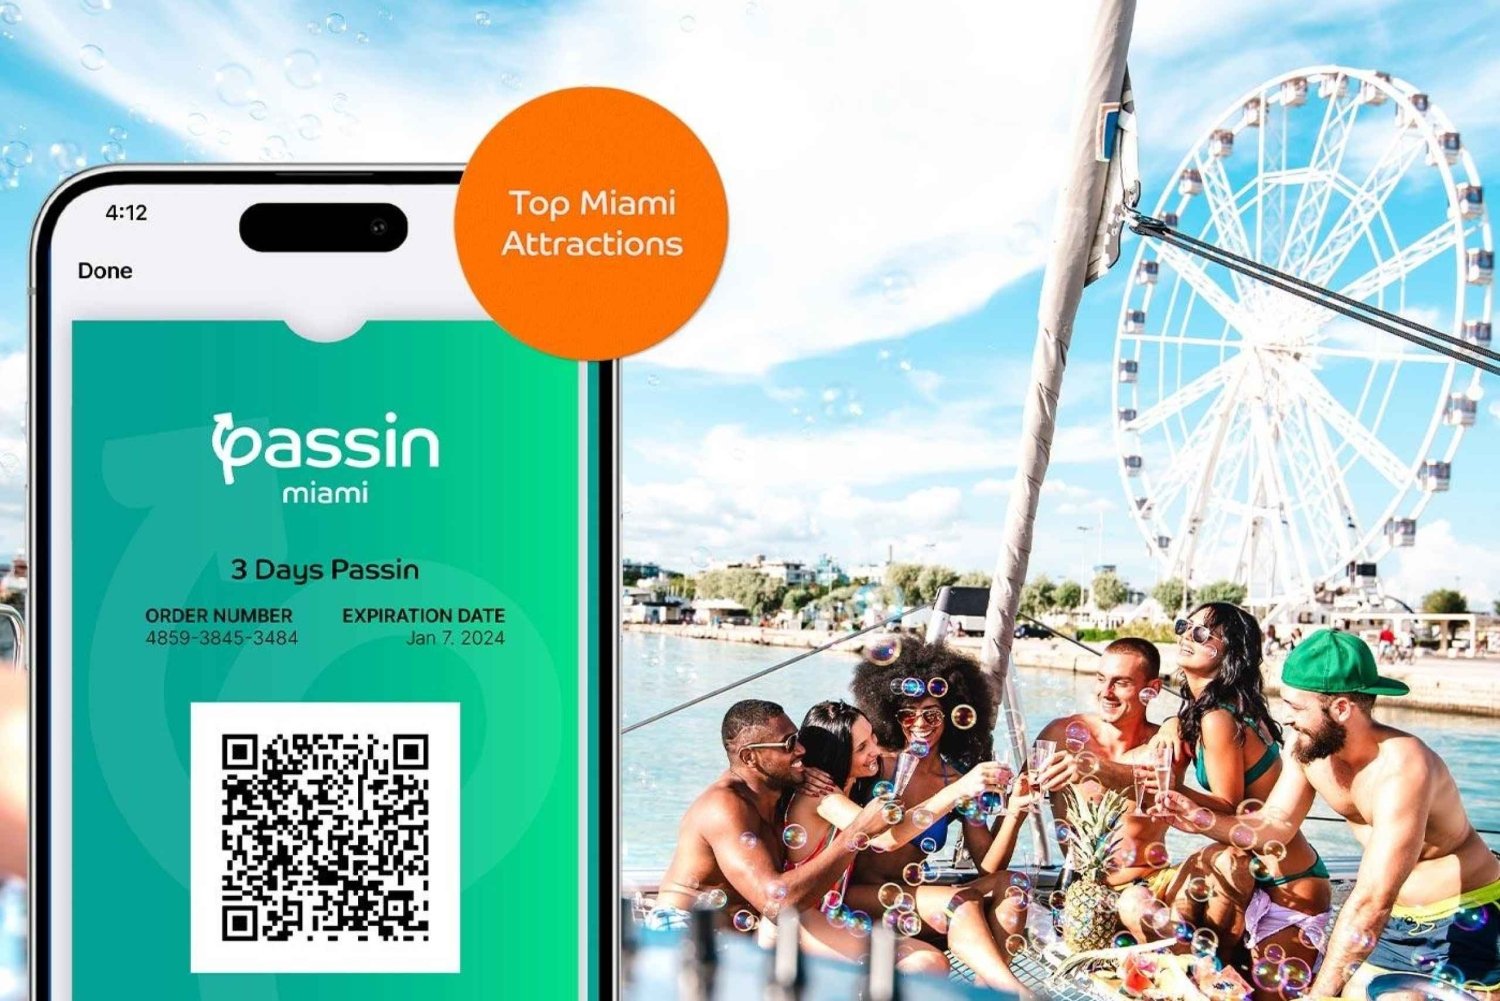 Passin Miami - All Inclusive Miami Pass w/ Airport Transfer